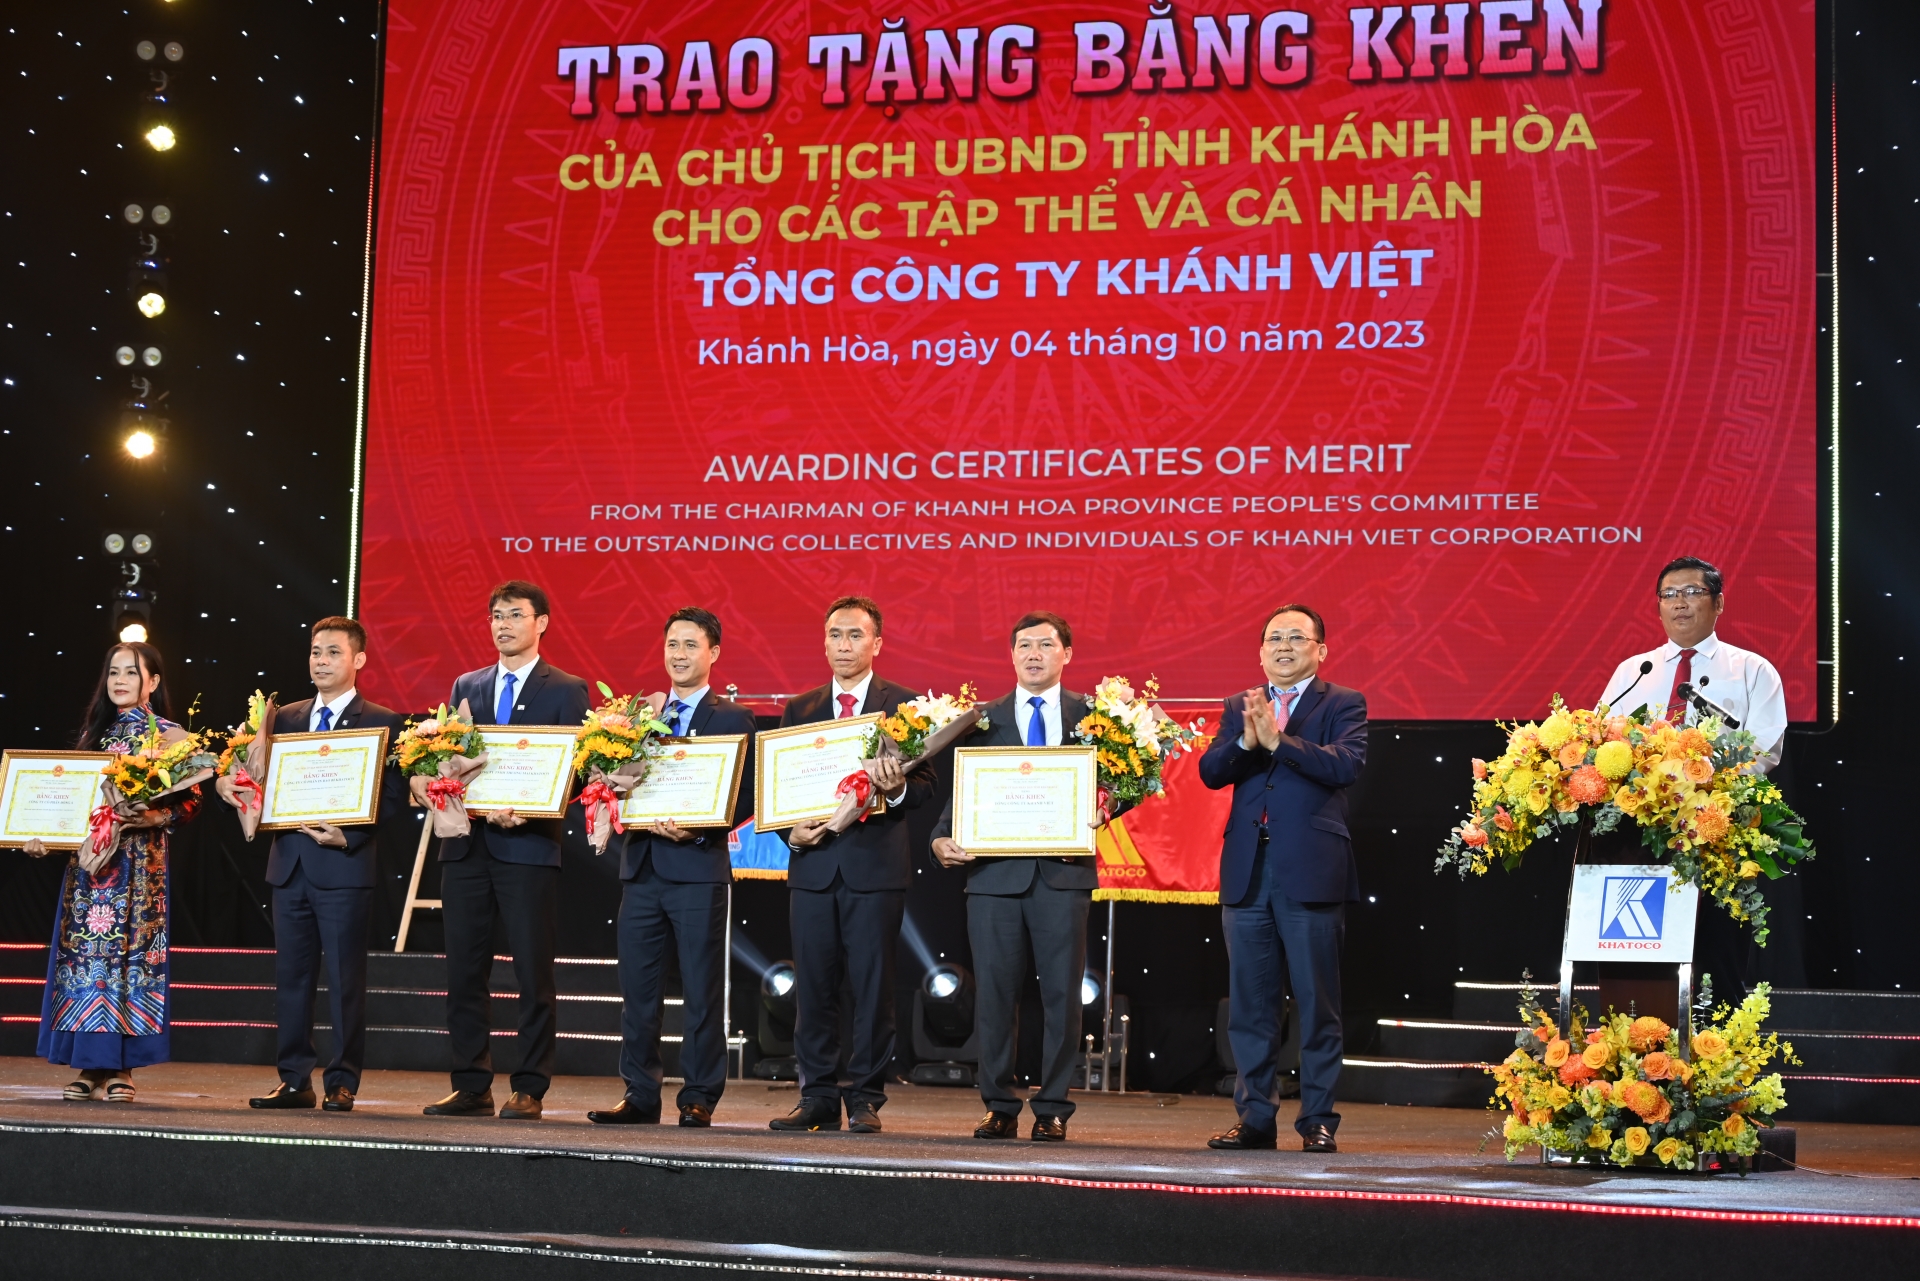 Ông Lê Hữu Hoàng-Phó Chủ tịch UBND tỉnh Khánh Hòa trao Bằng khen của Chủ tịch UBND tỉnh cho các tập thể